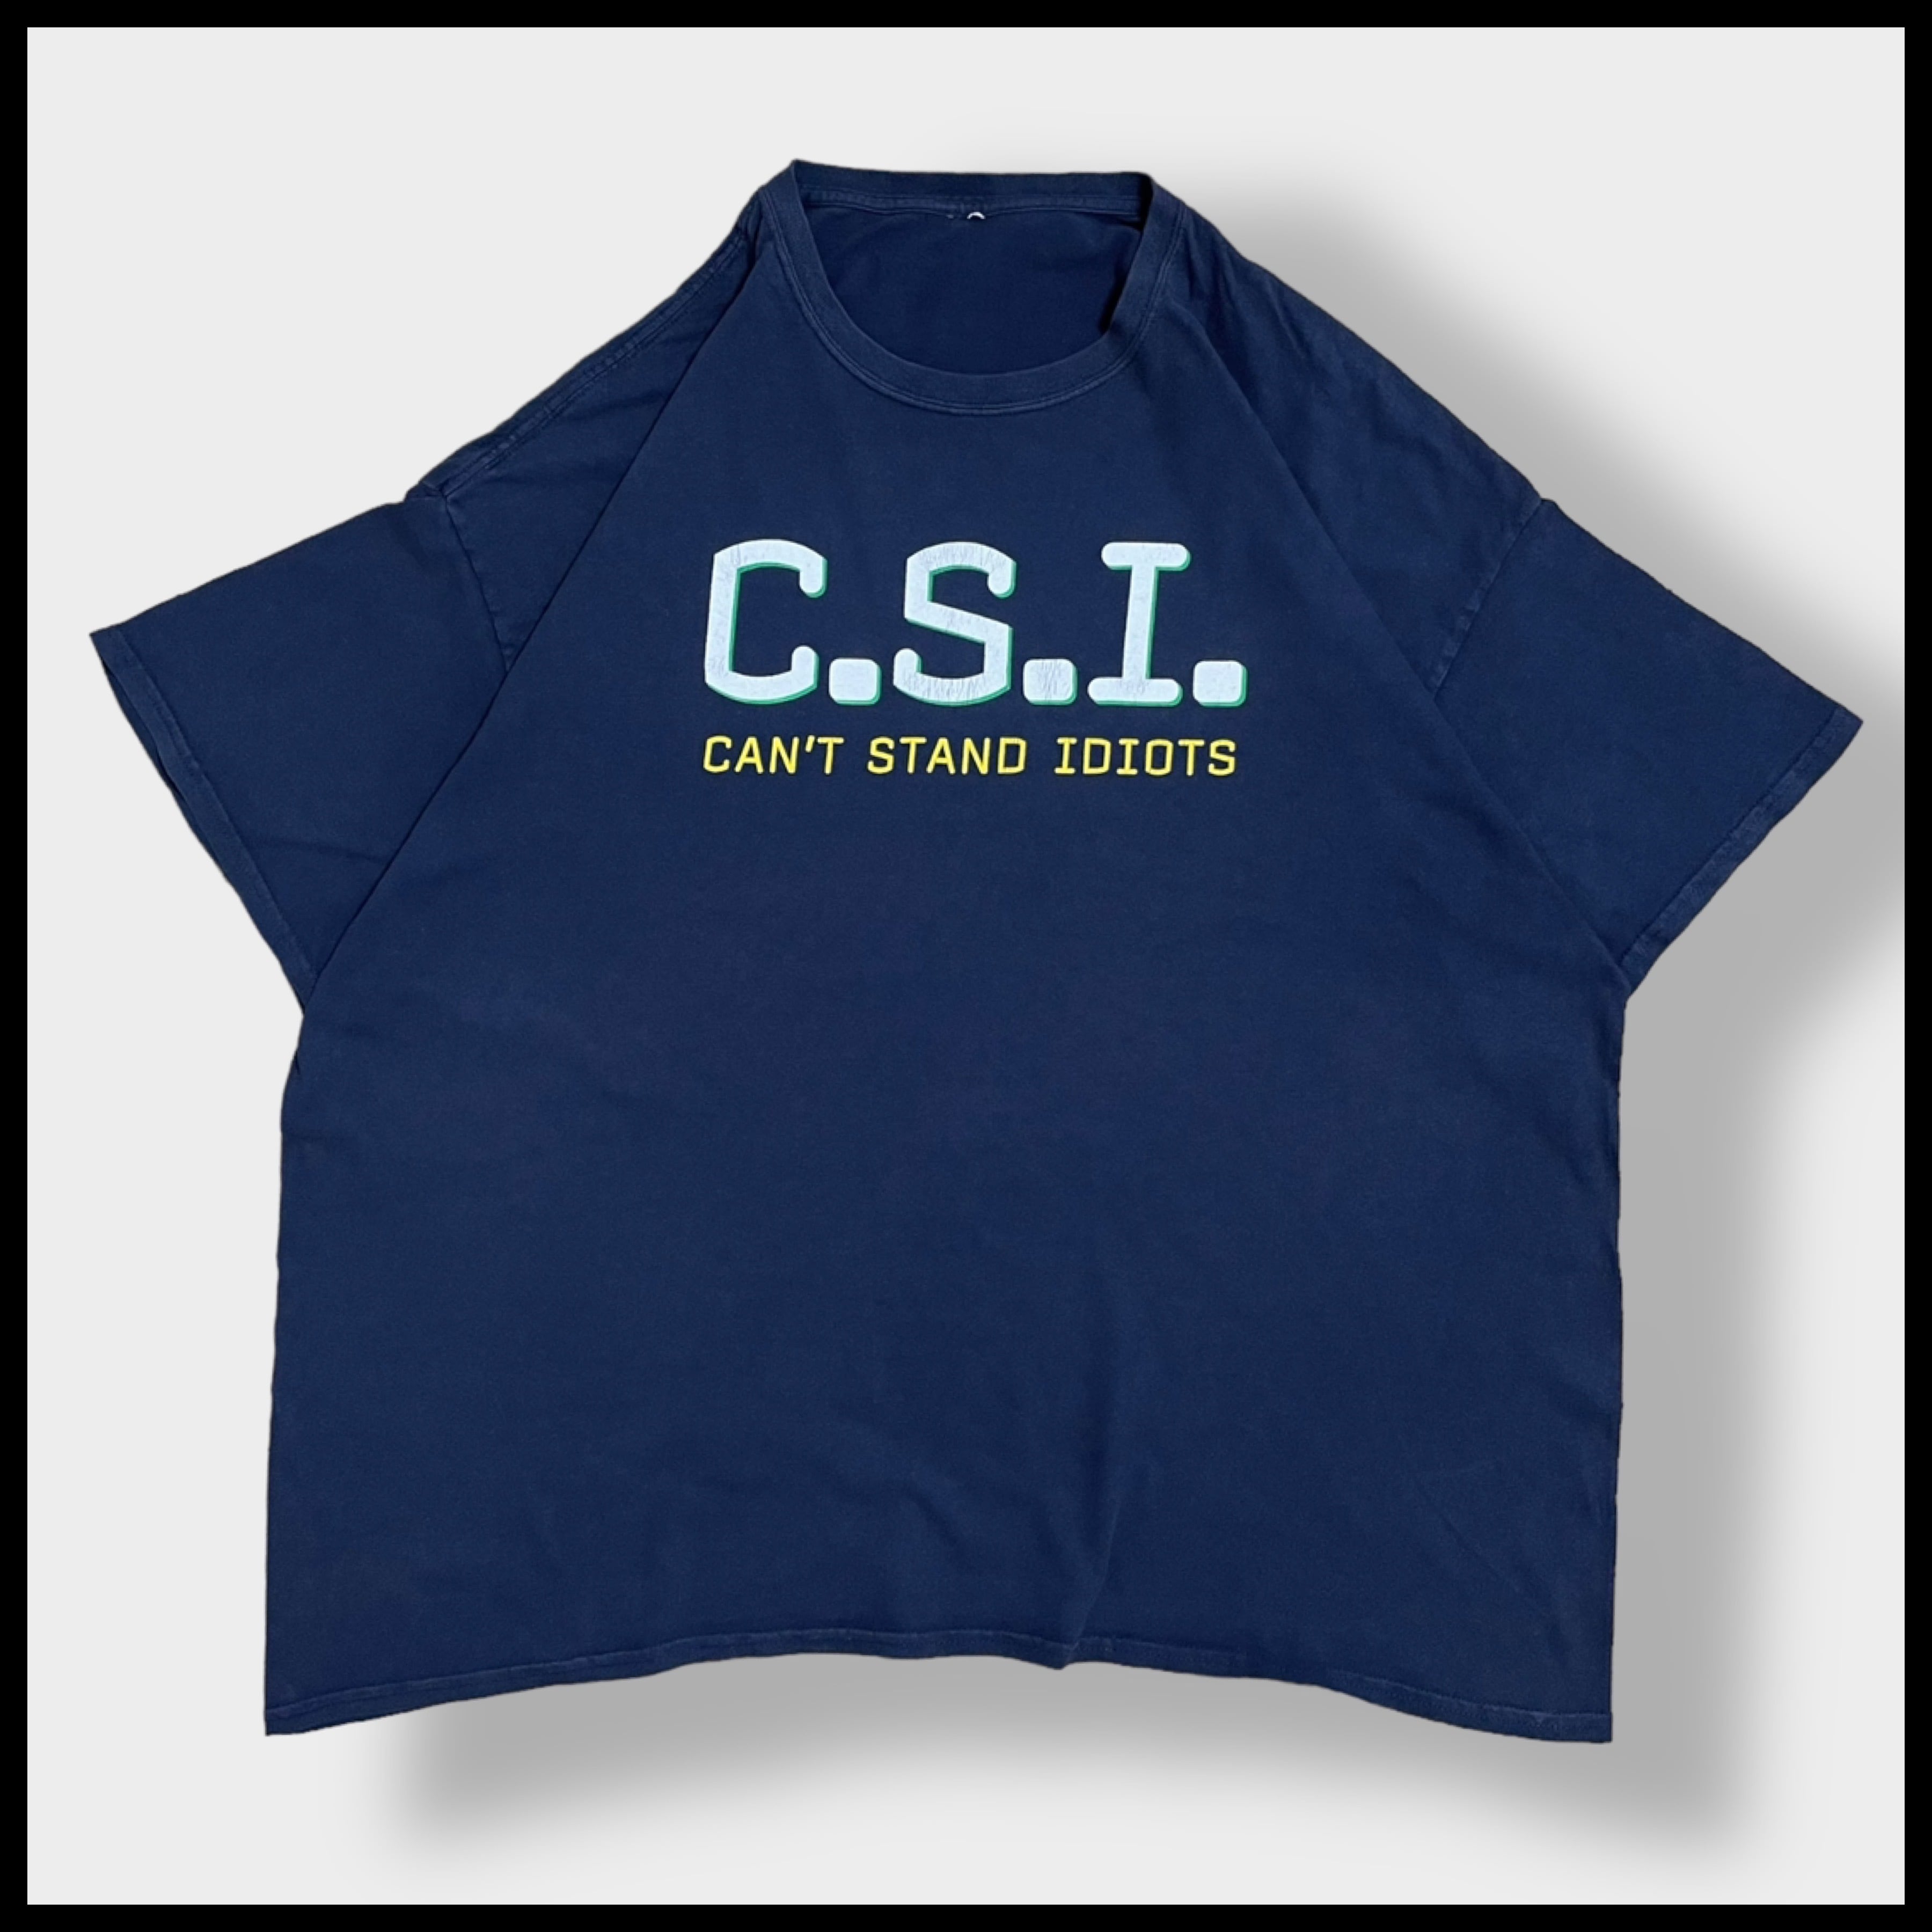 CSI科学捜査班 Tシャツ